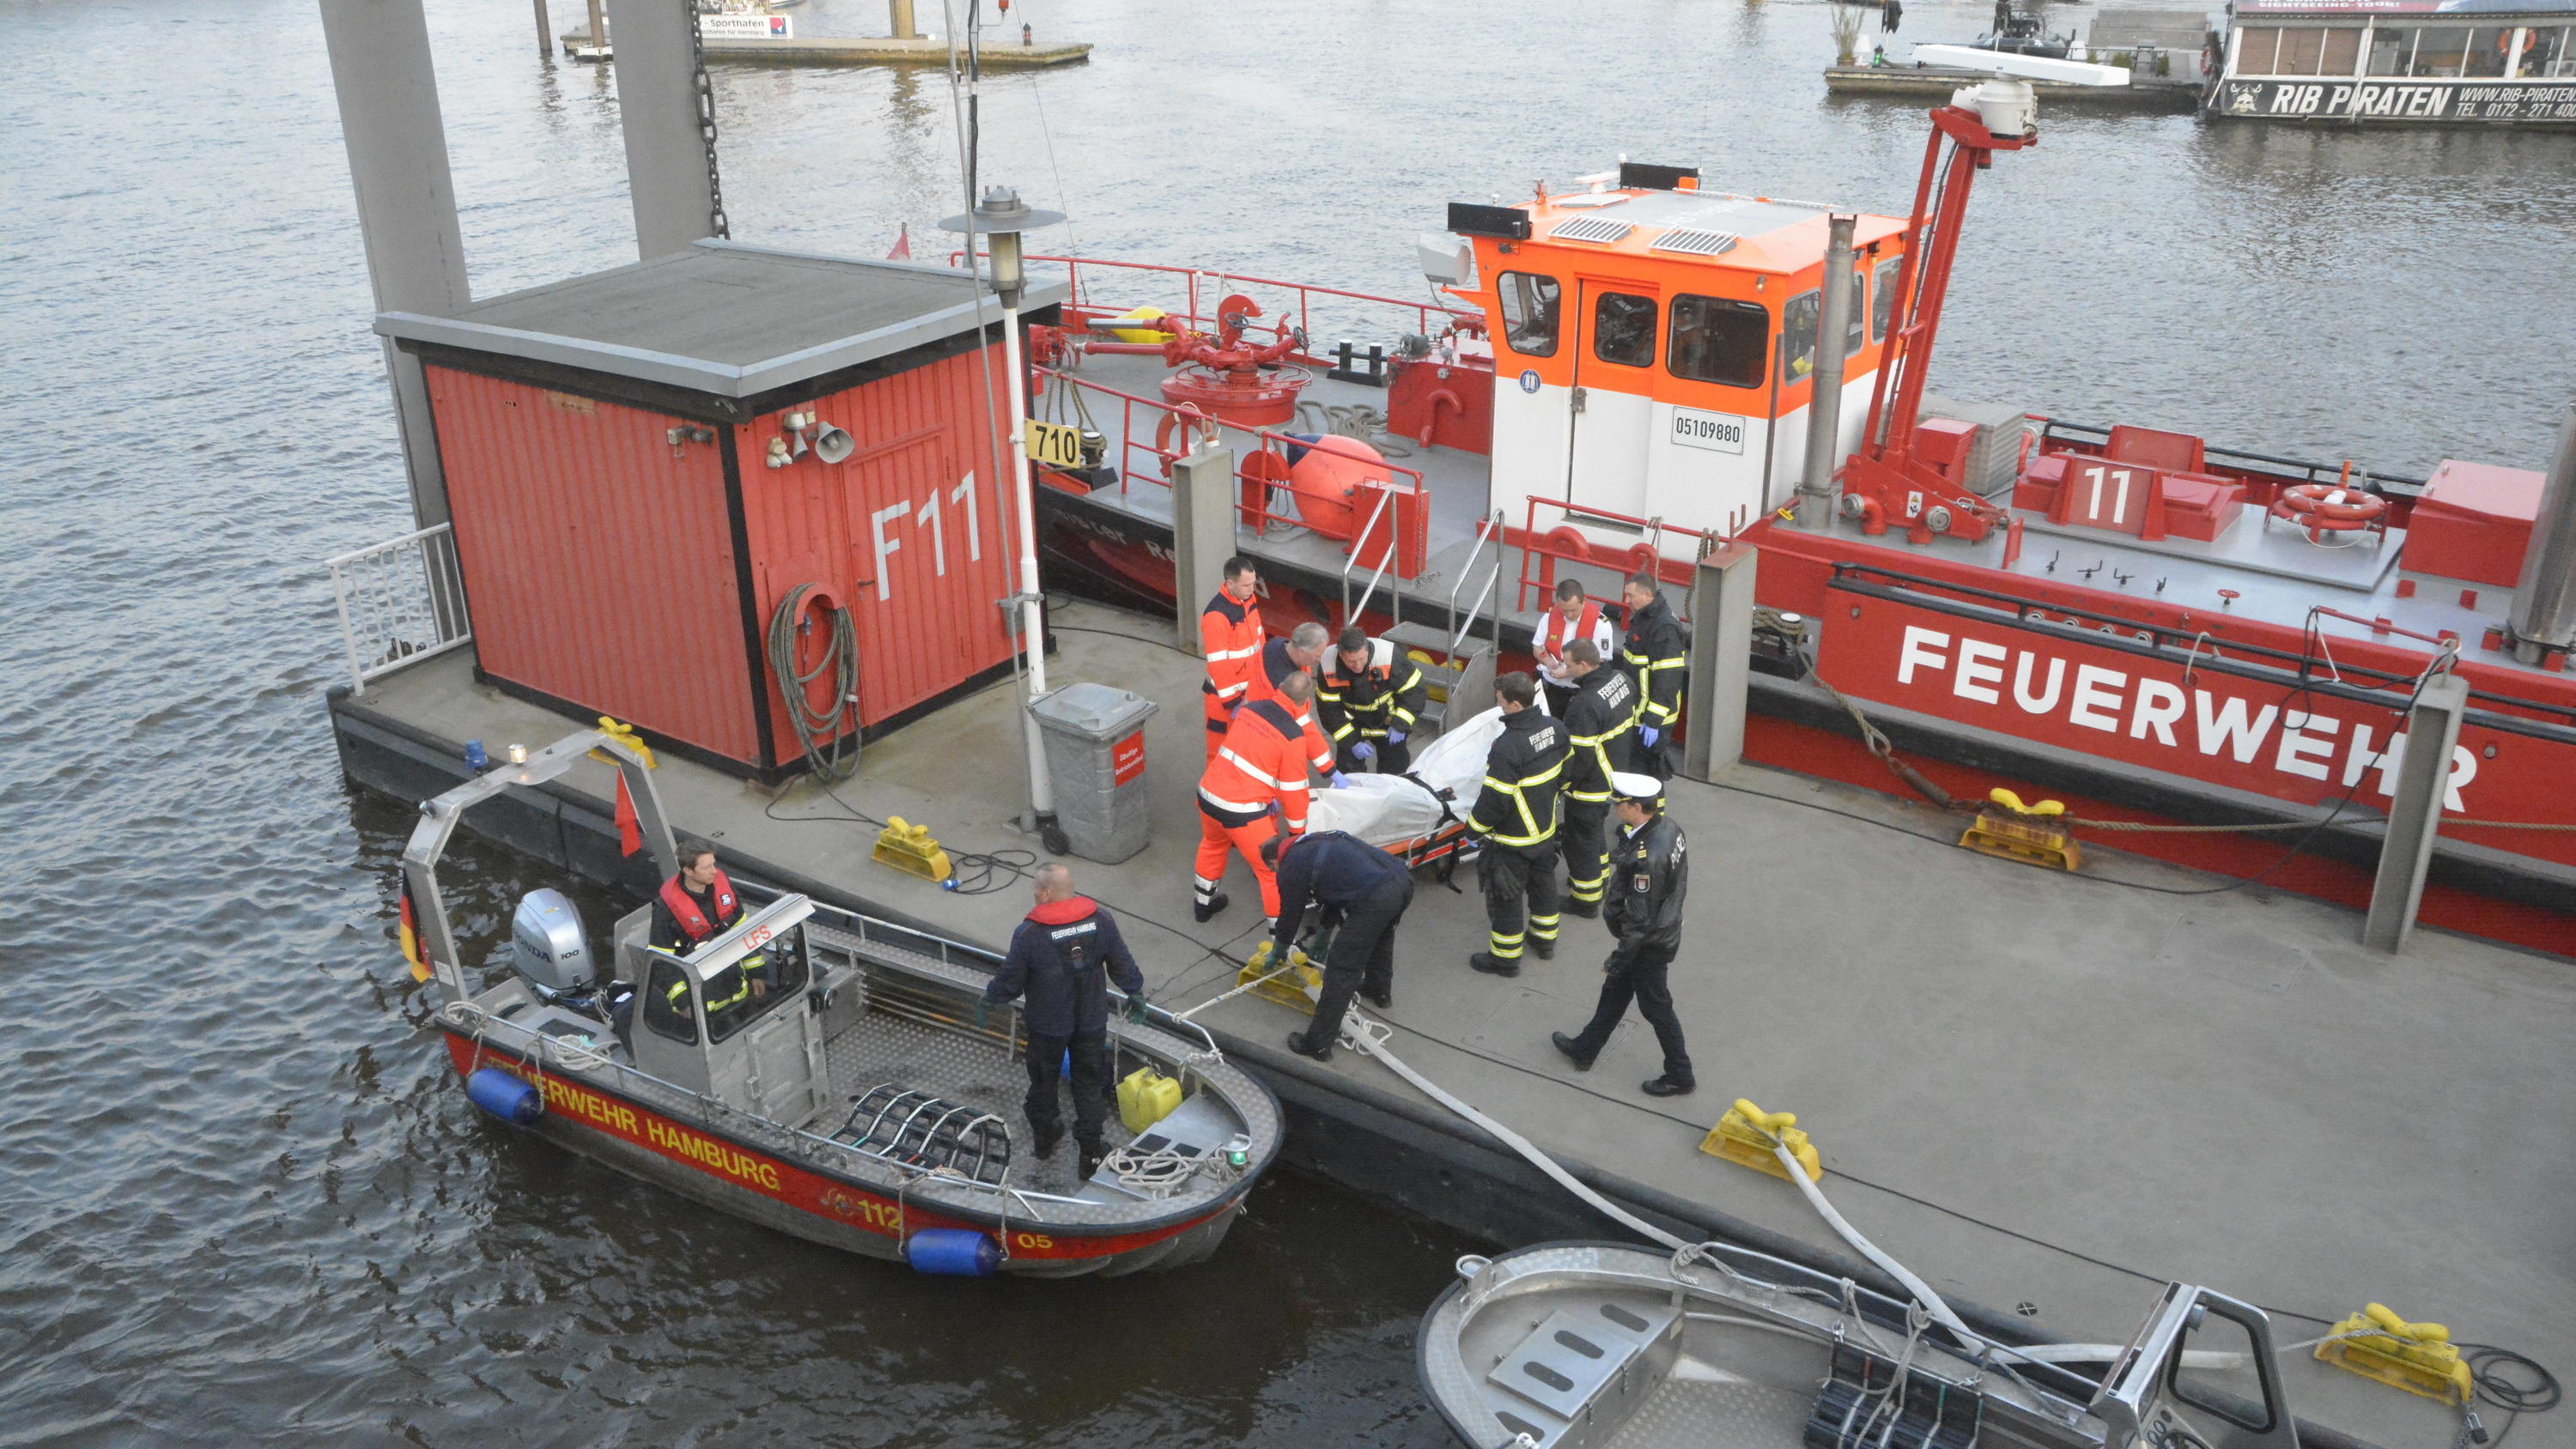 23.04.2018, Hamburg: Eine Leiche wird von einem Boot der Feuerwehr Hamburg auf einen Steg im Hafen getragen. Bei der am Montagmorgen aus der Elbe in der Hamburger Hafencity geborgenen Leiche handelt es sich mit hoher Wahrscheinlichkeit um den vermiss